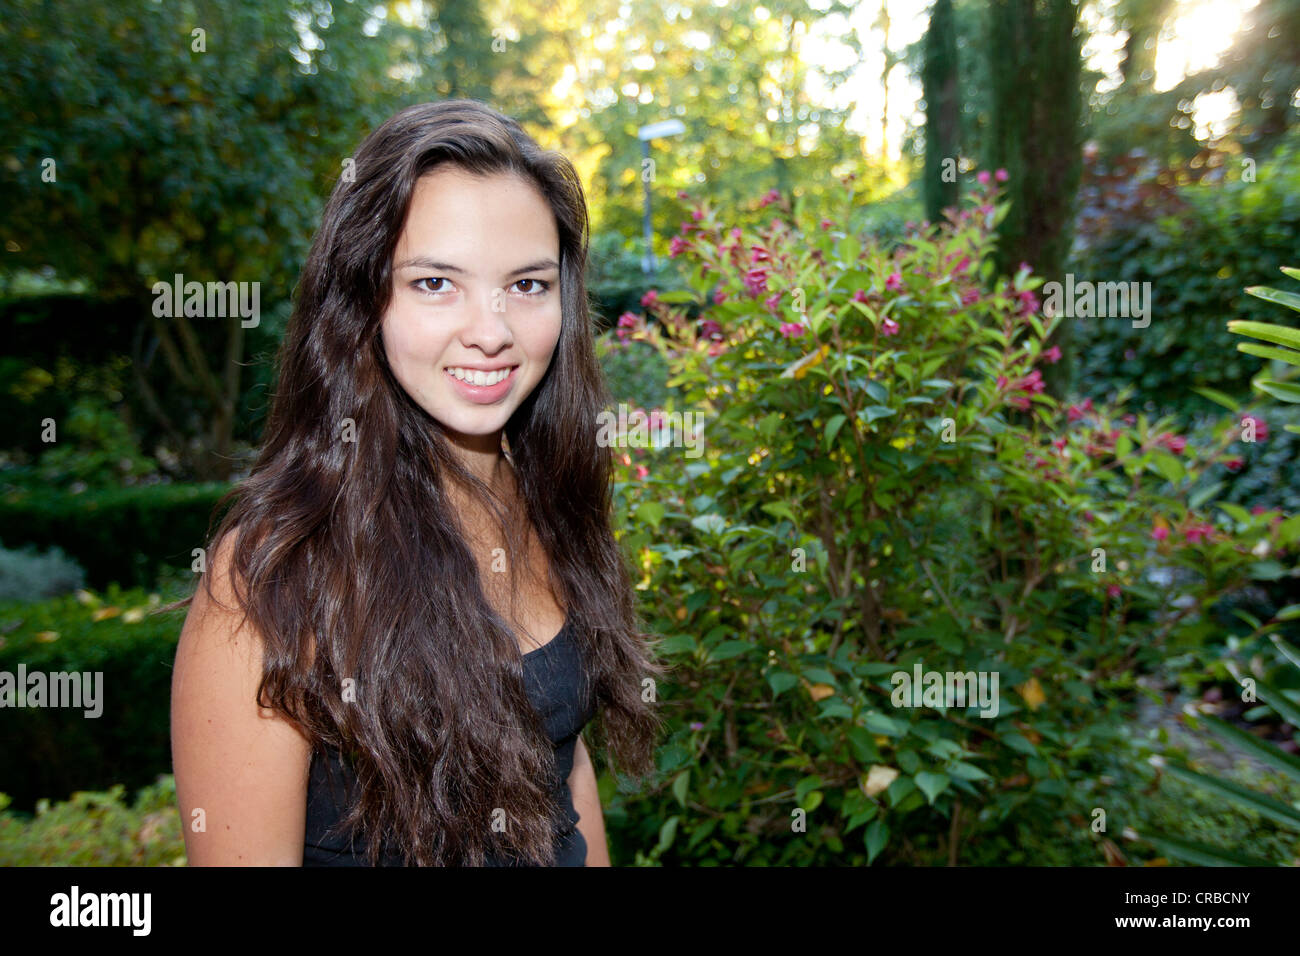 Giovane donna, circa 18 anni, ritratto in un ambiente naturale Foto Stock